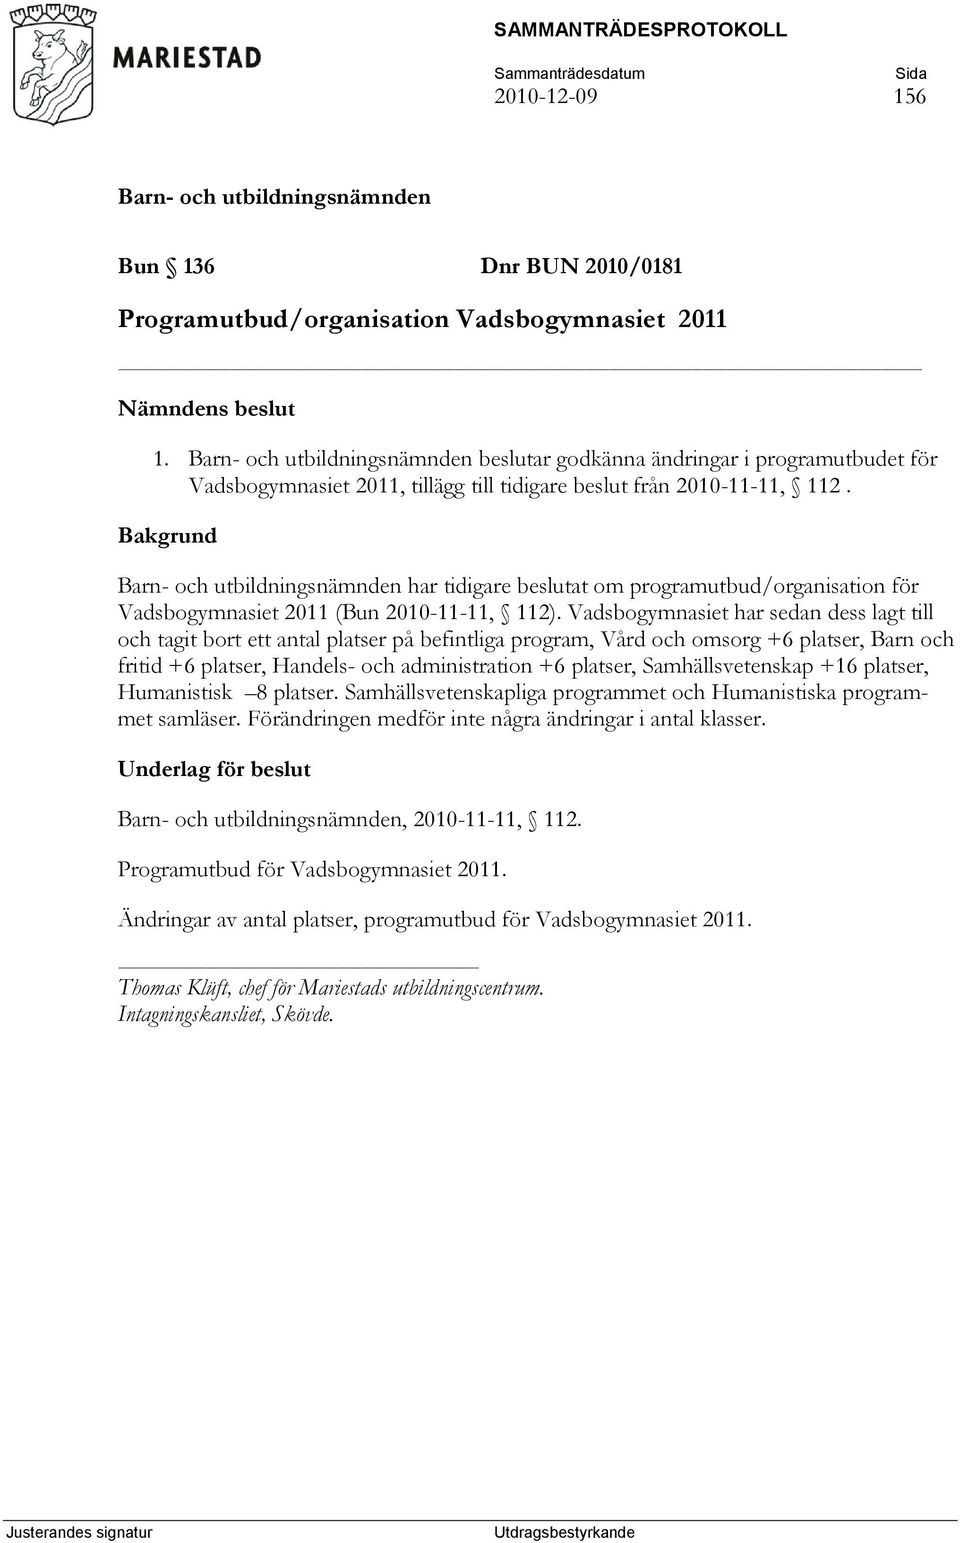 Bakgrund har tidigare beslutat om programutbud/organisation för Vadsbogymnasiet 2011 (Bun 2010-11-11, 112).